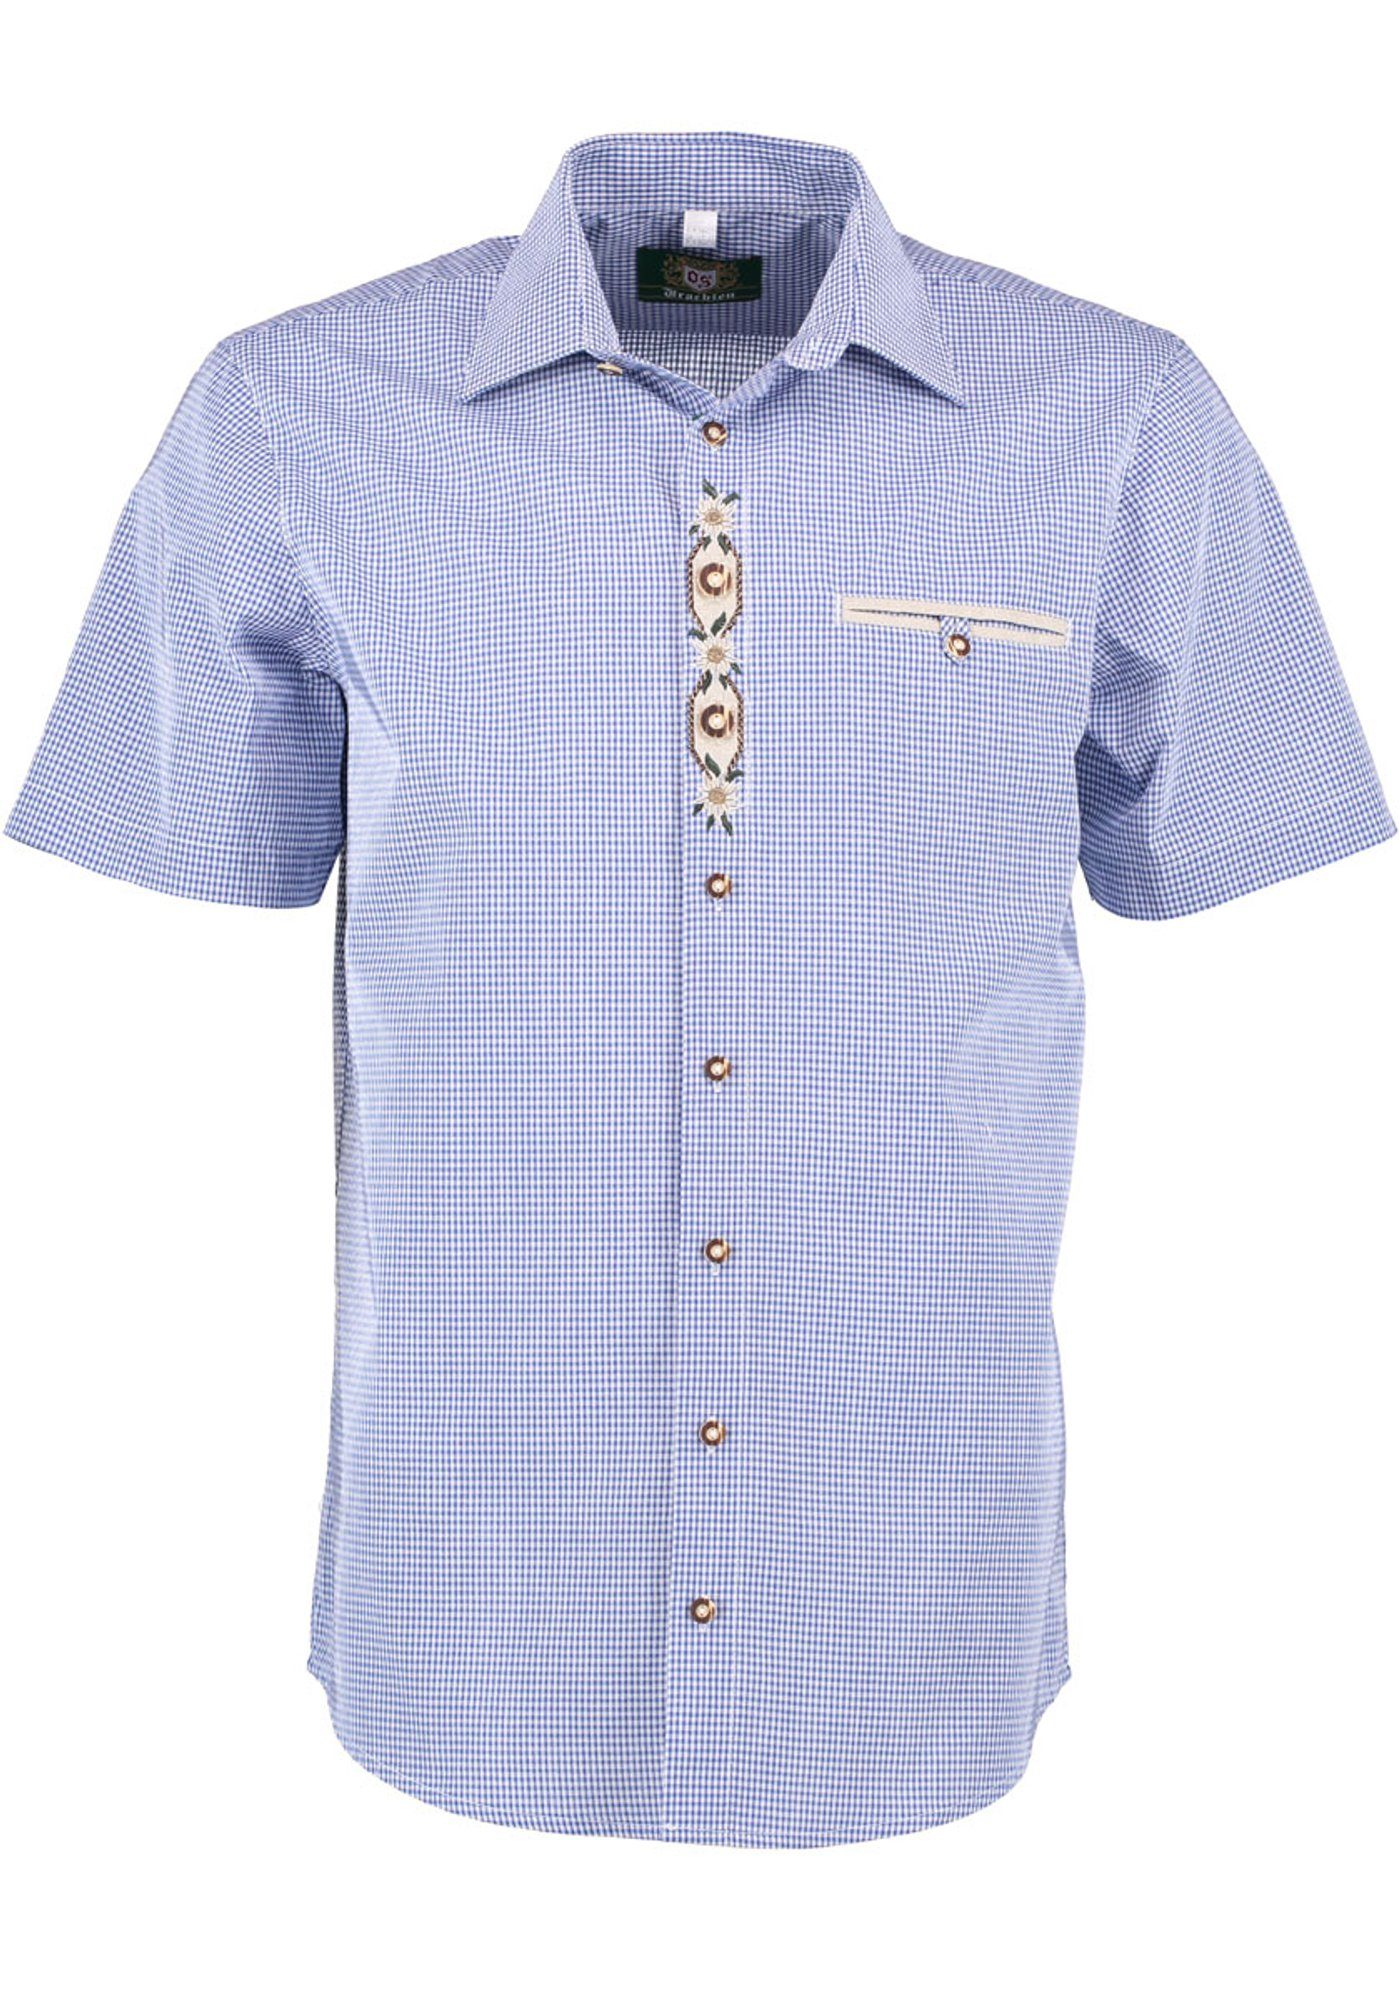 OS-Trachten Trachtenhemd Weonys Paspeltasche, der Knopfleiste Kurzarmhemd mit auf Edelweiß-Stickerei mittelblau